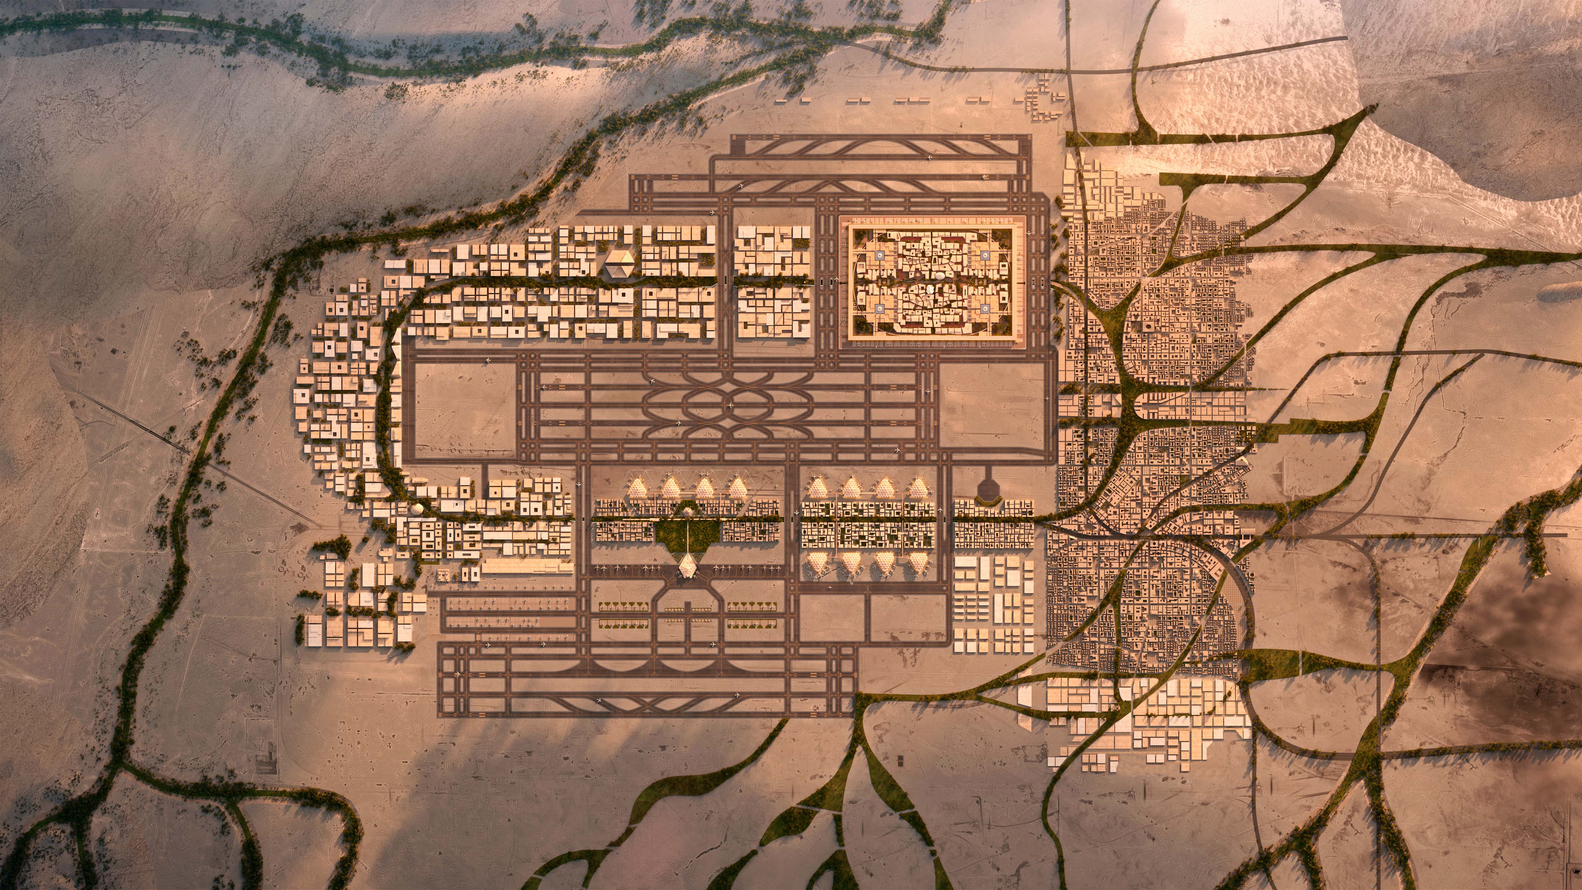 Σαουδική Αραβία: Τα σχέδια για ένα από τα μεγαλύτερα αεροδρόμια του κόσμου [εικόνες]